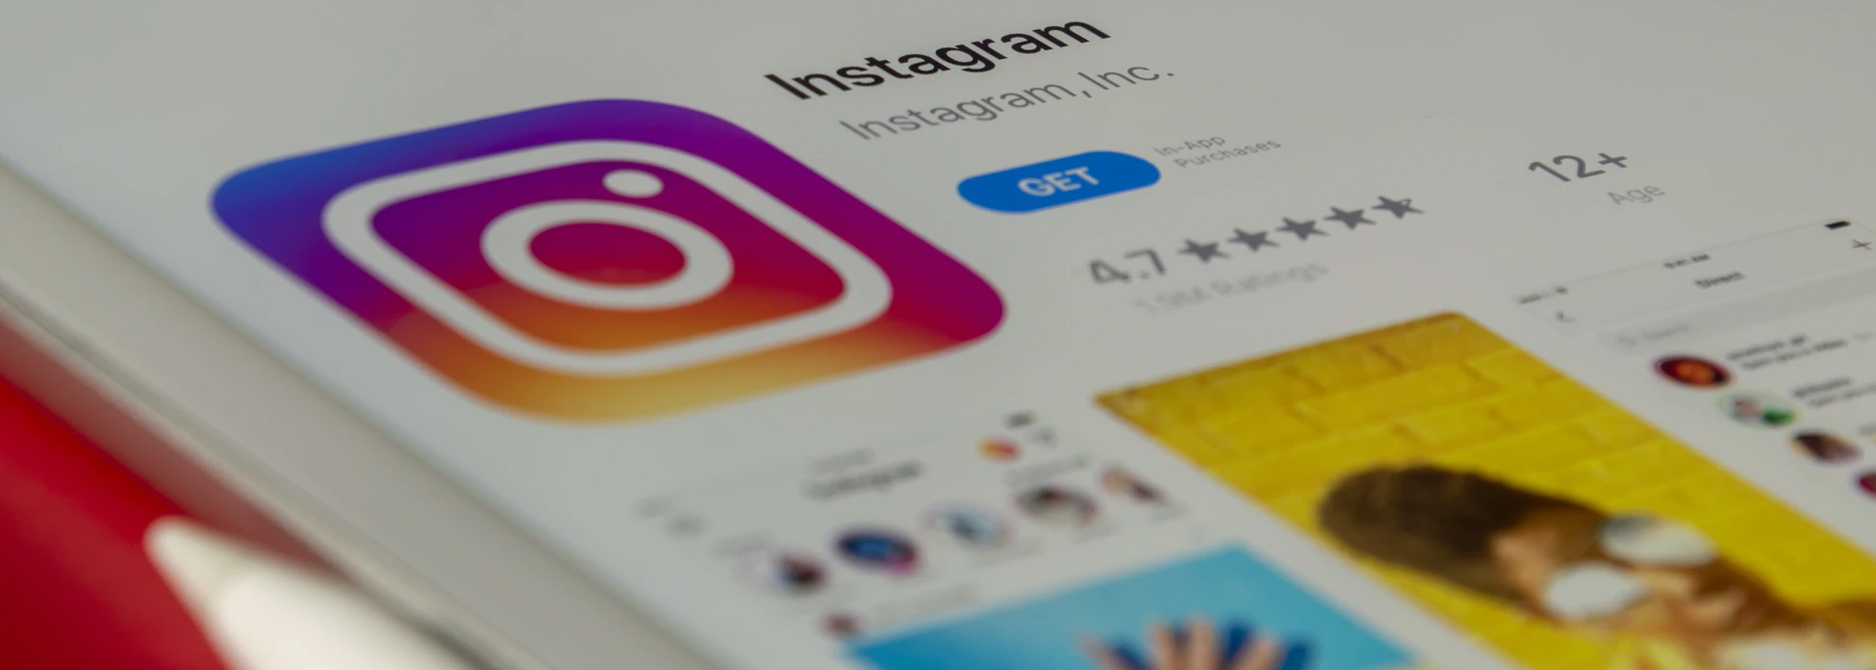 Creación de contenido para Instagram, Redes sociales, Marketing
